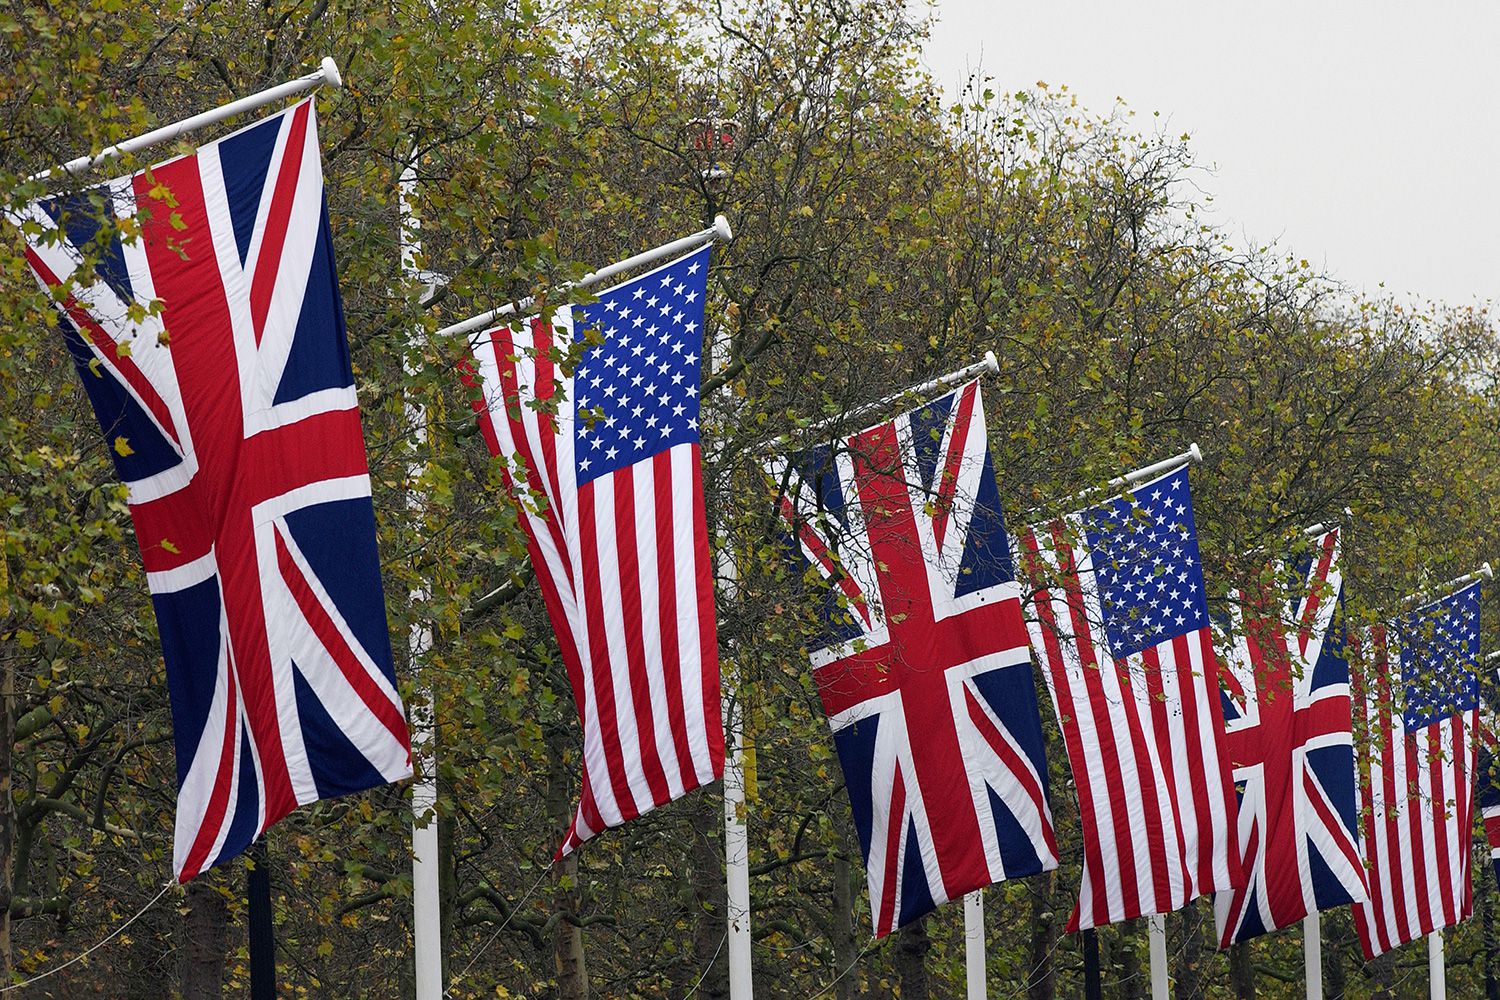 6 steaguri ale SUA si Regatului unit arborate alternativ pe fundalul coroanelor unor copaci